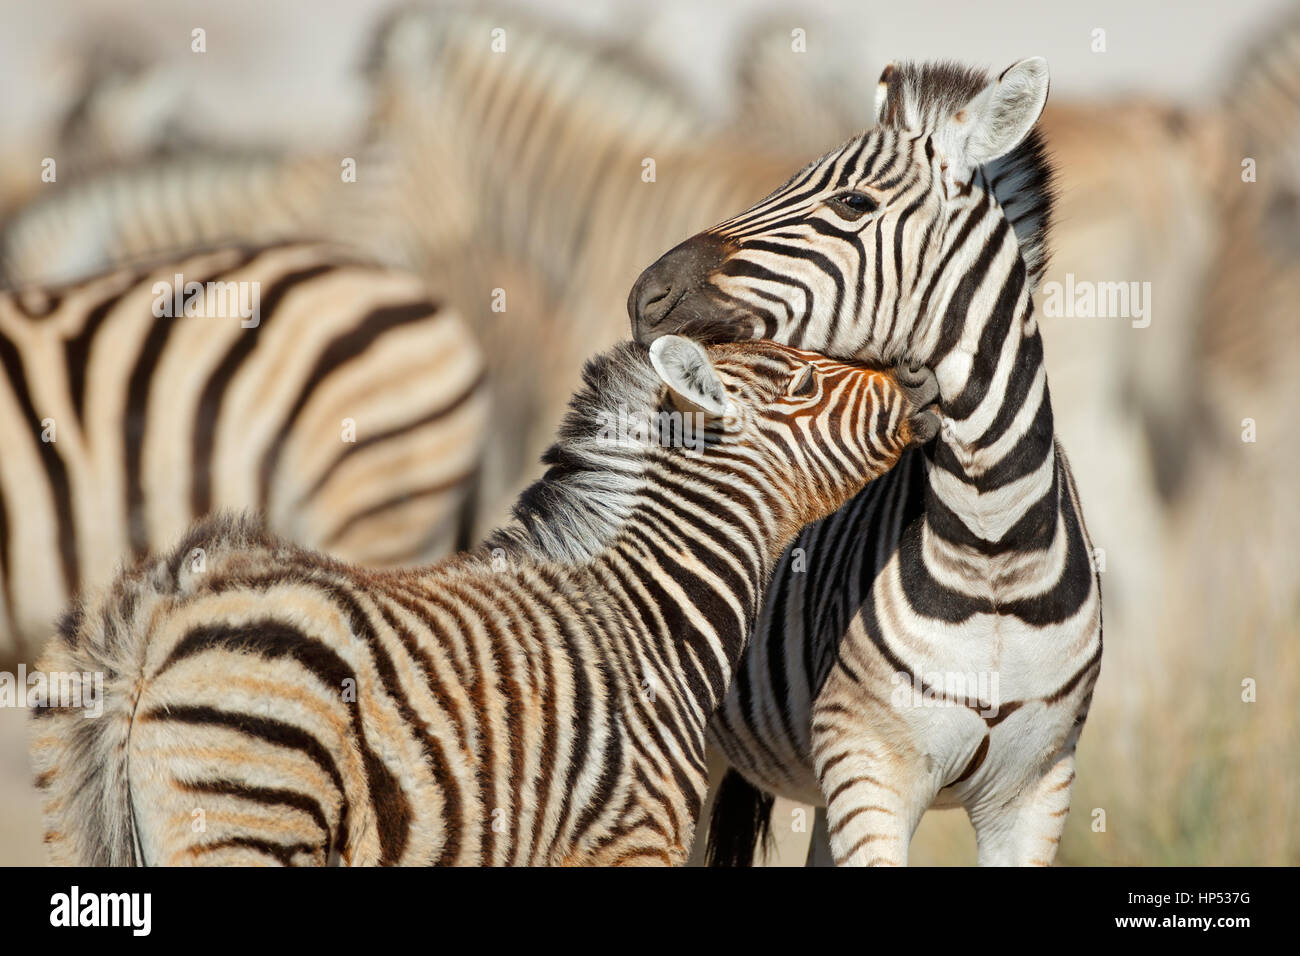 Llanuras cebra (Equus burchelli) la interacción, el Parque Nacional de Etosha, Namibia Foto de stock